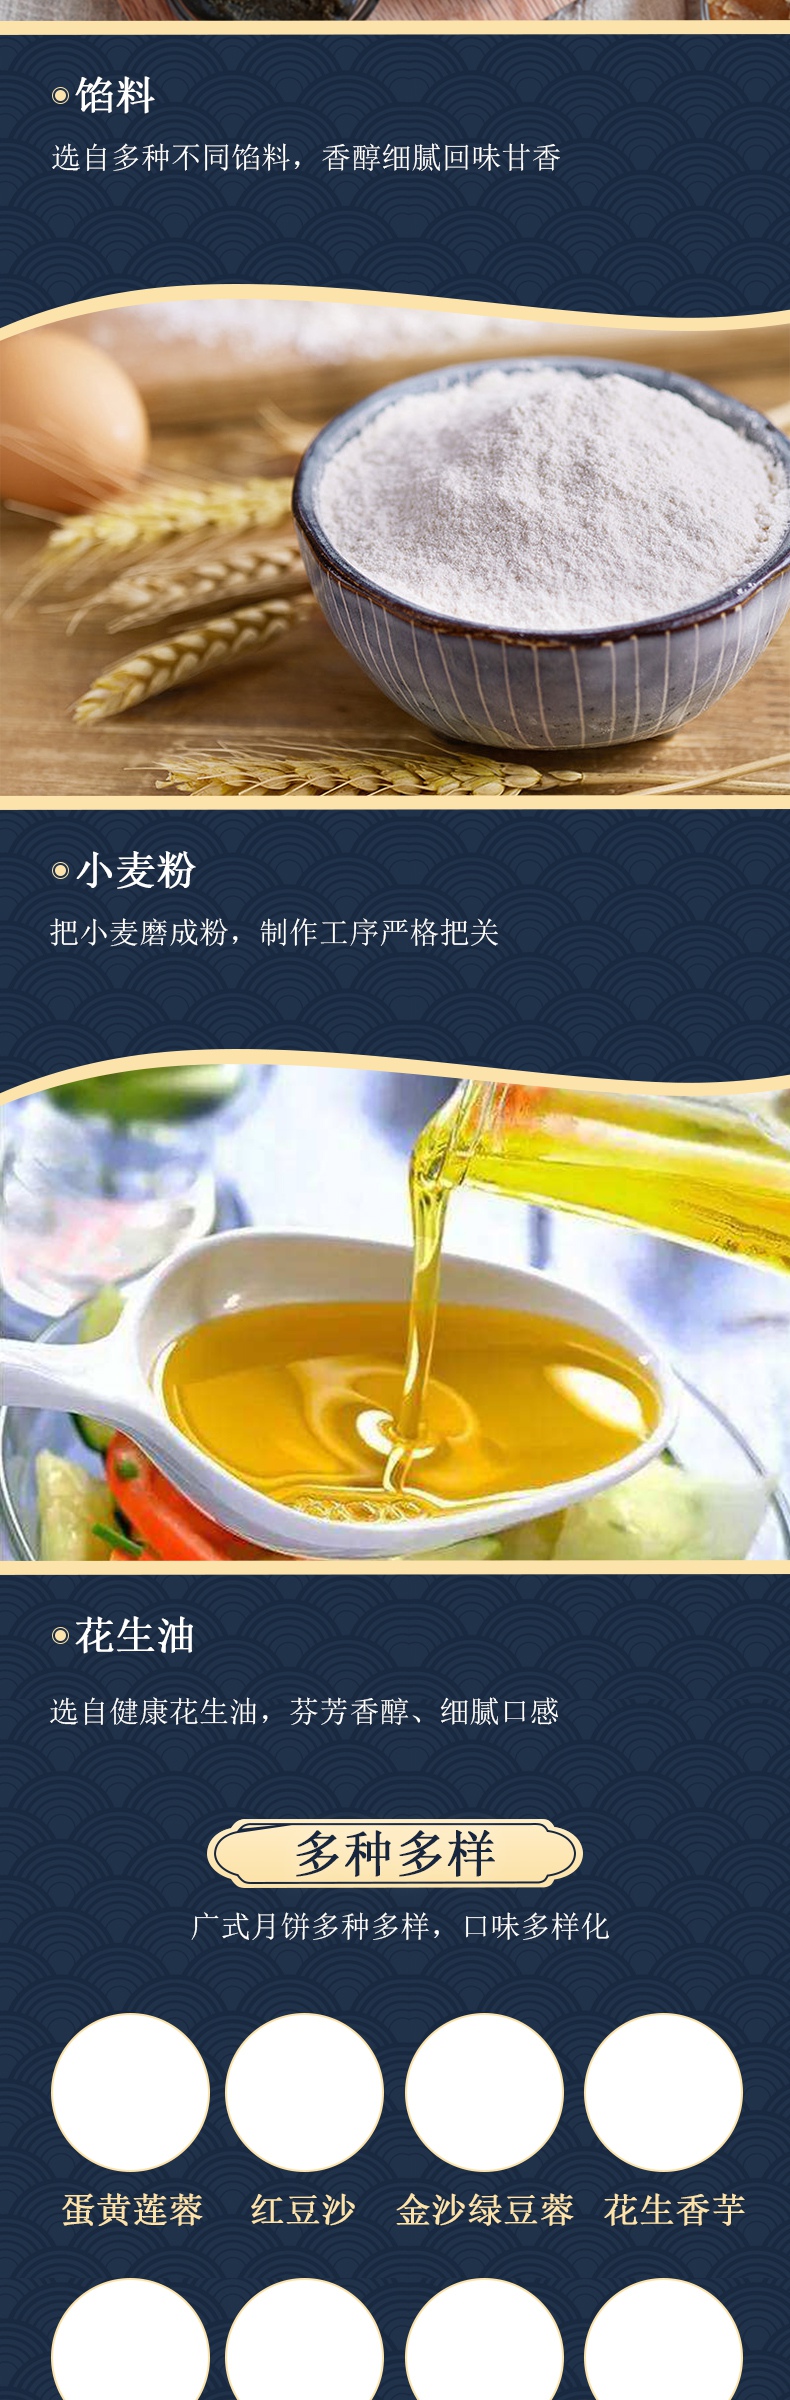 简约中国风食品茶饮广式月饼详情页